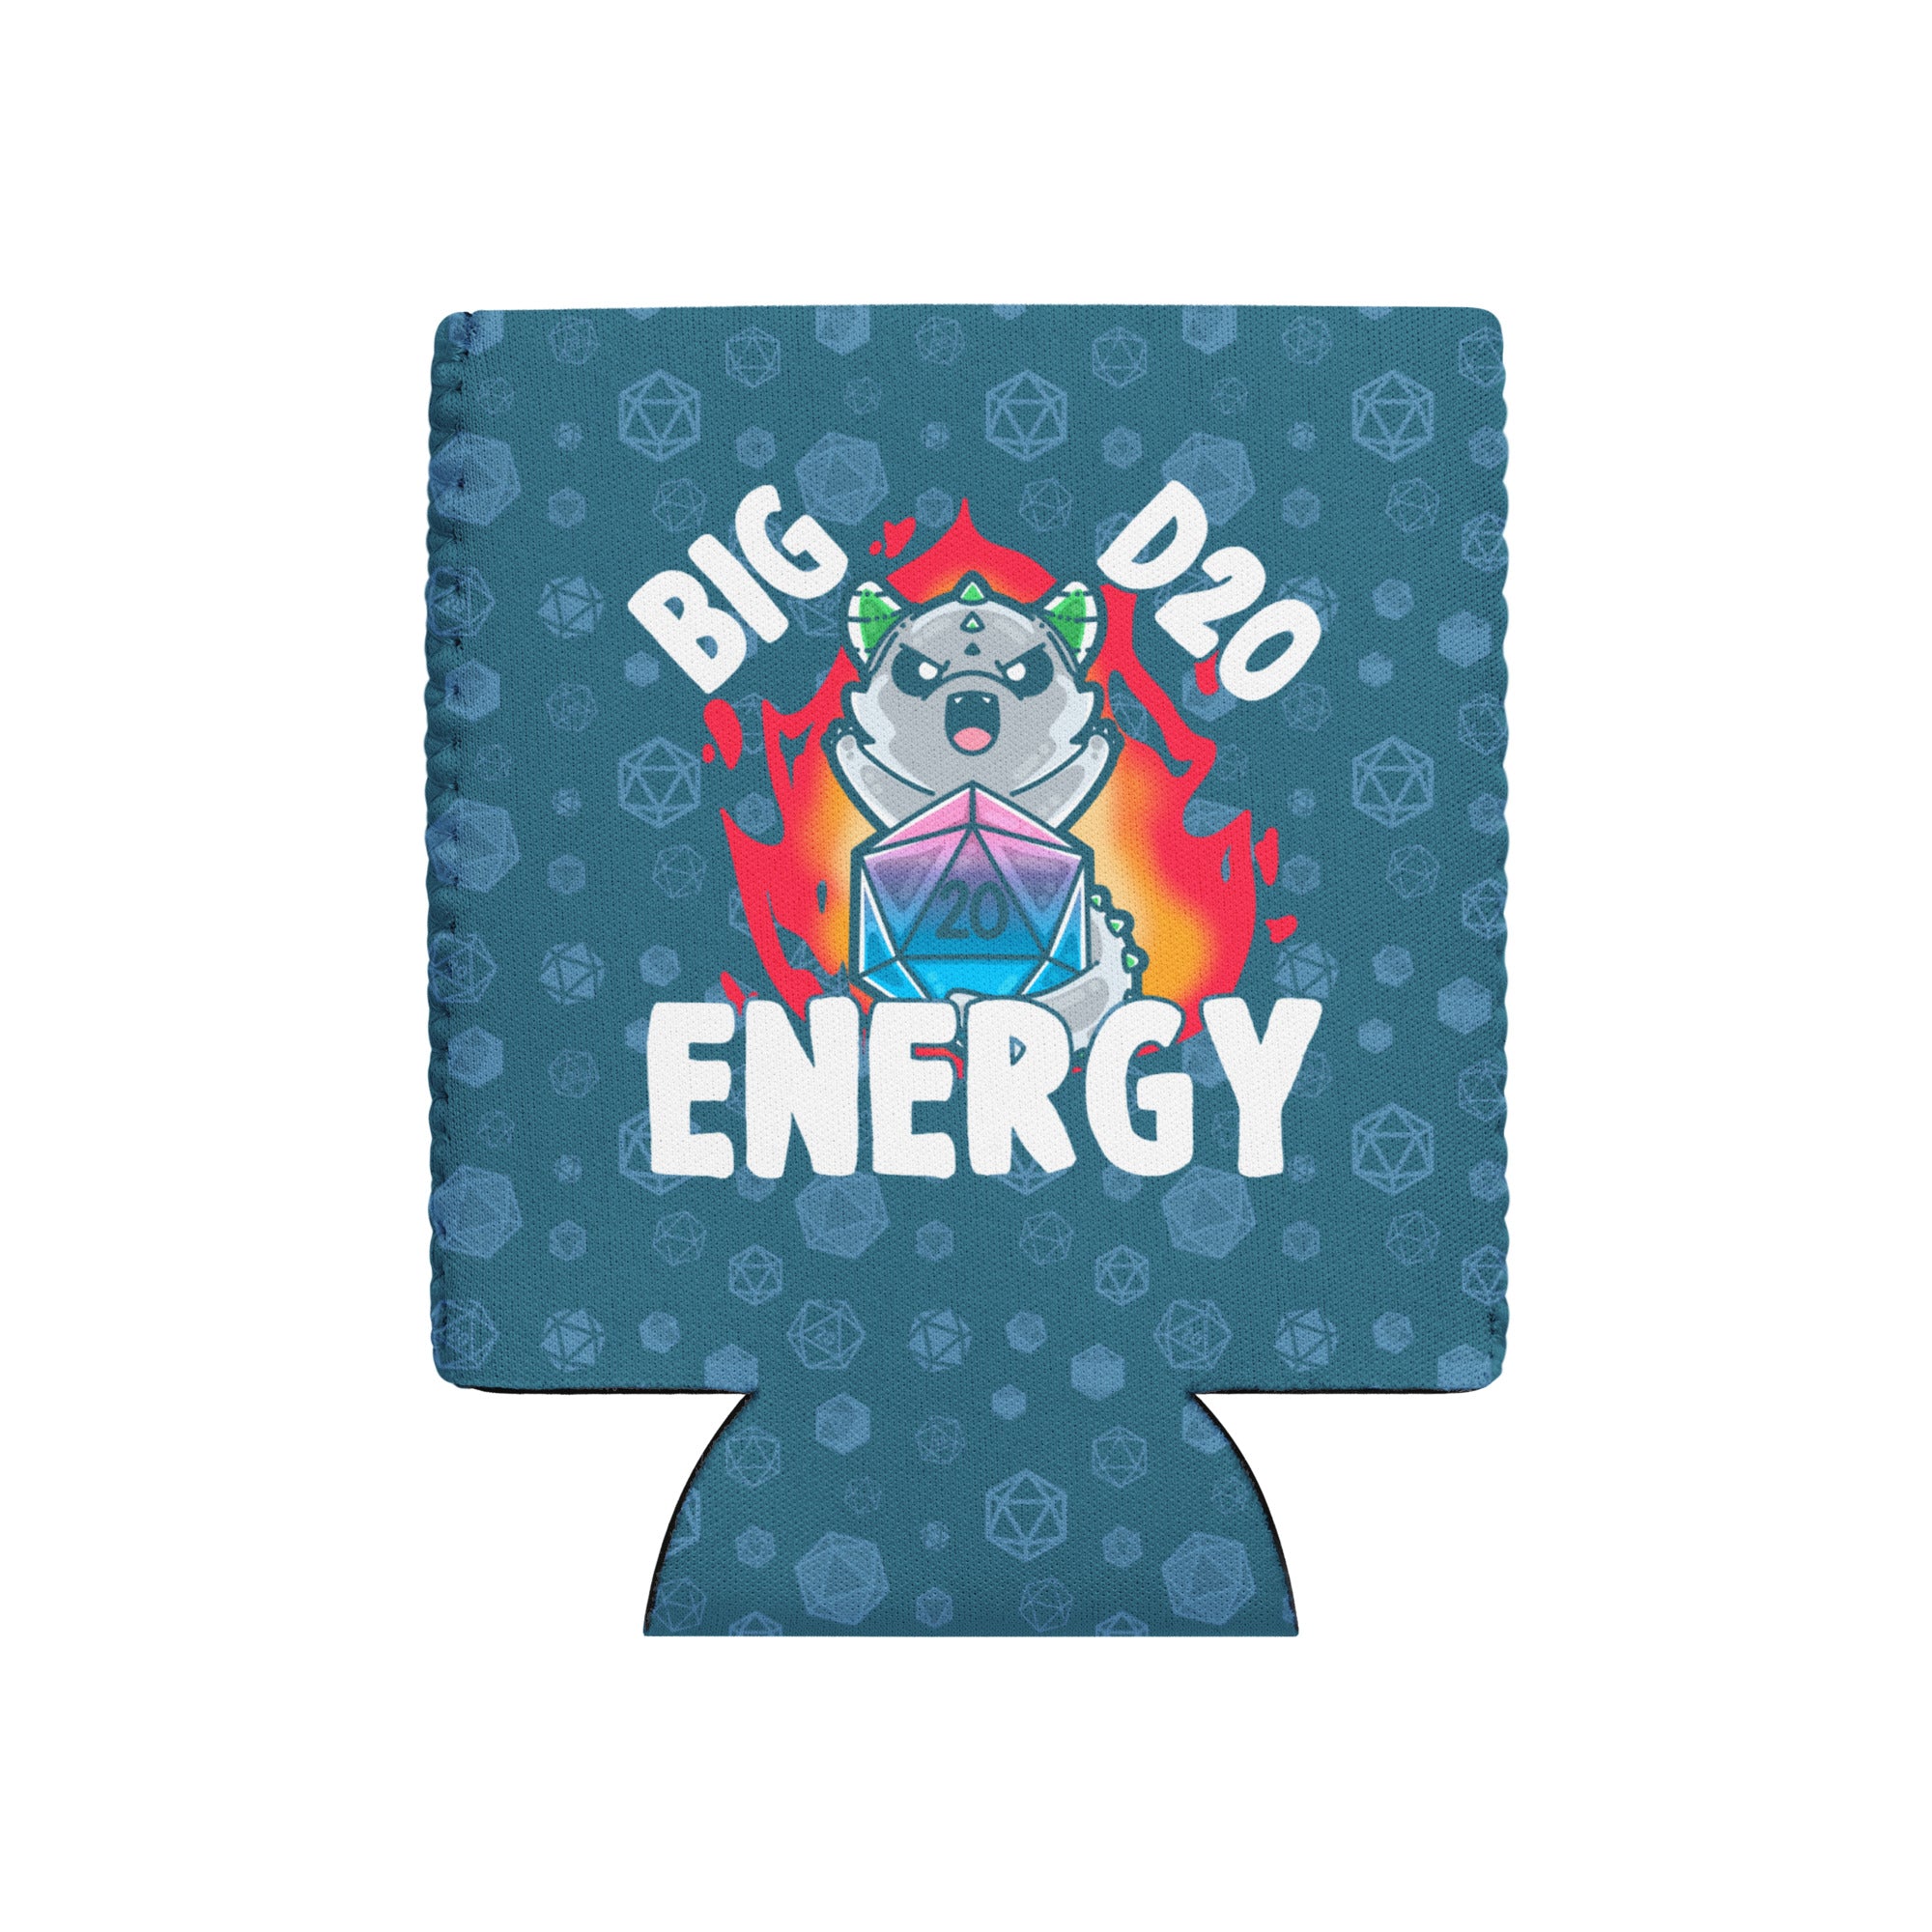 BIG D 20 ENERGY W/BACKGROUND - 12 oz Koozie